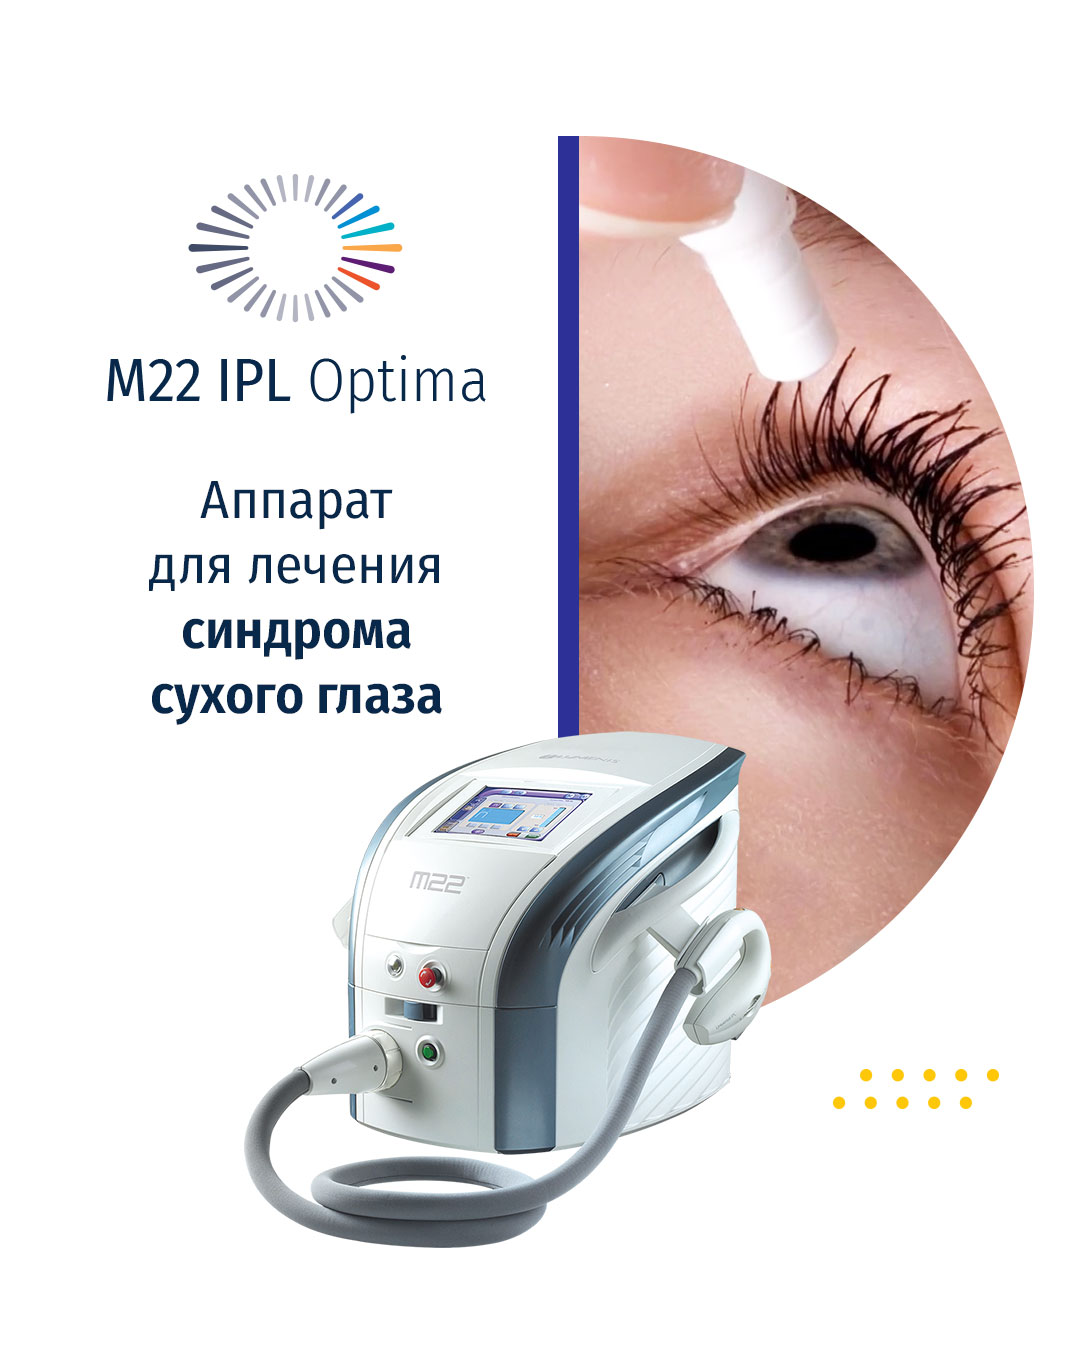 Синдром сухого глаза лечение лазером